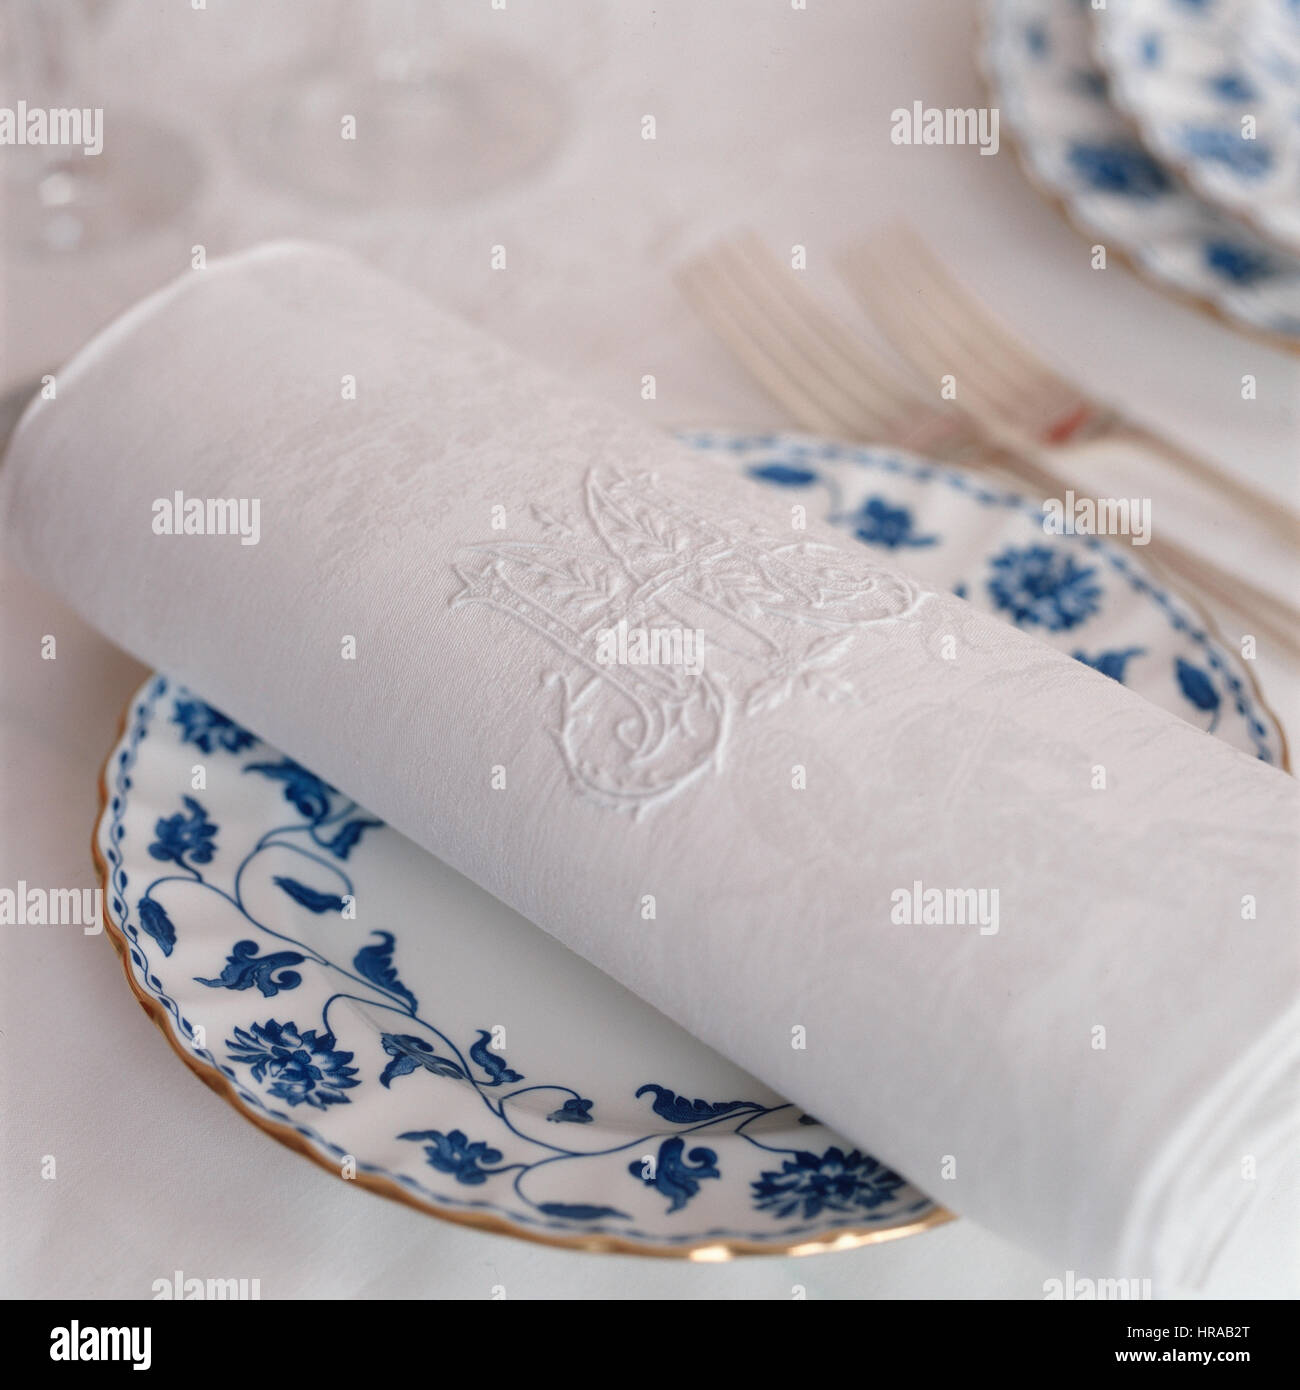 Antigüedades servilleta de lino bordadas con las iniciales de la familia plegados en la placa lateral Foto de stock